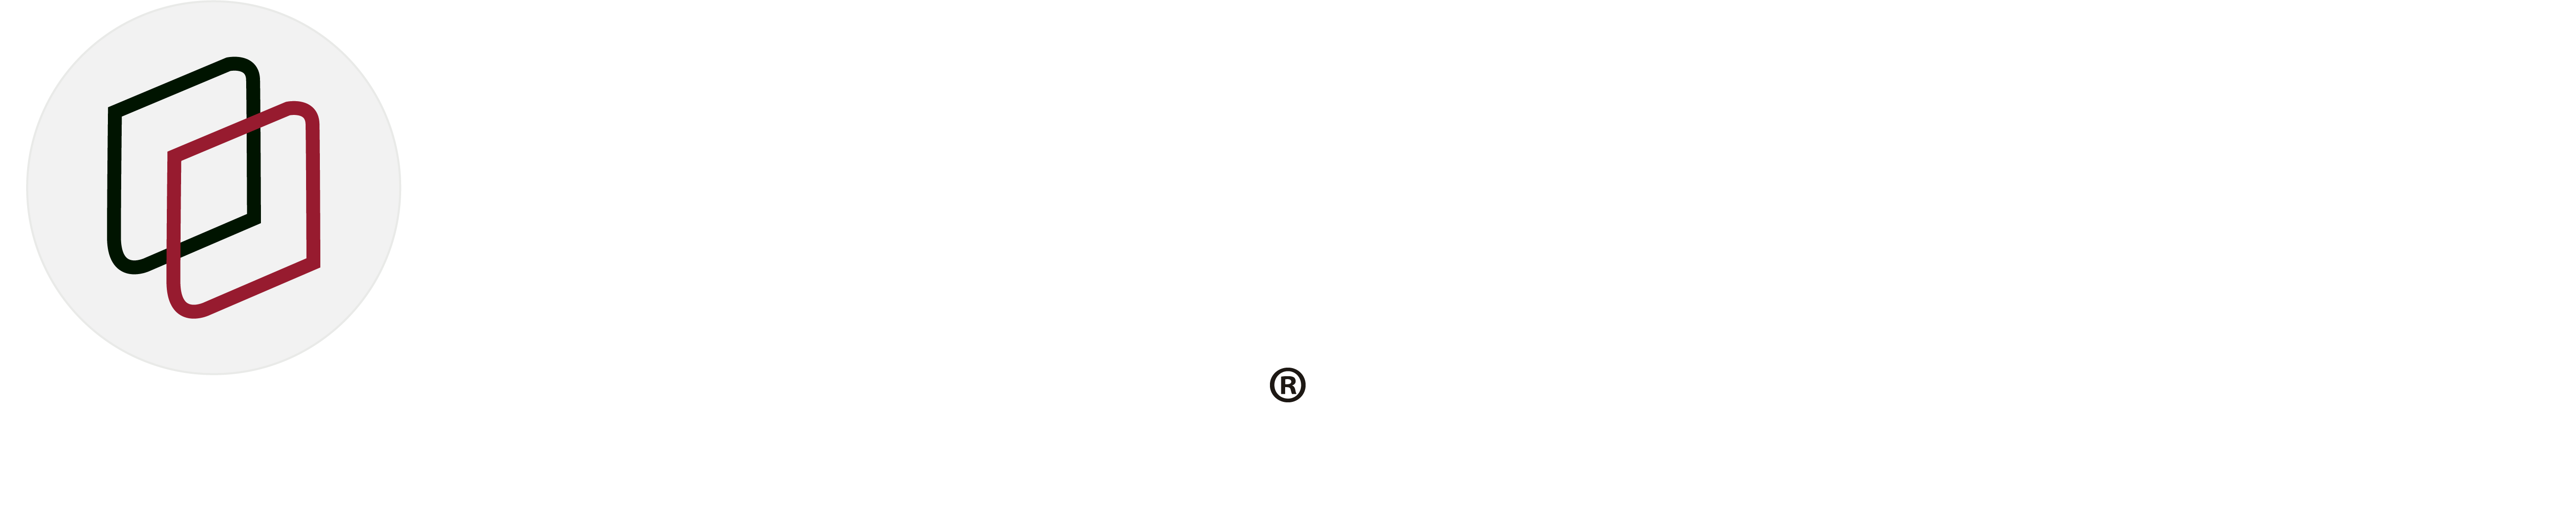 Logo_Publisher for Rational Software Architect_SodiusWillert_2020_White